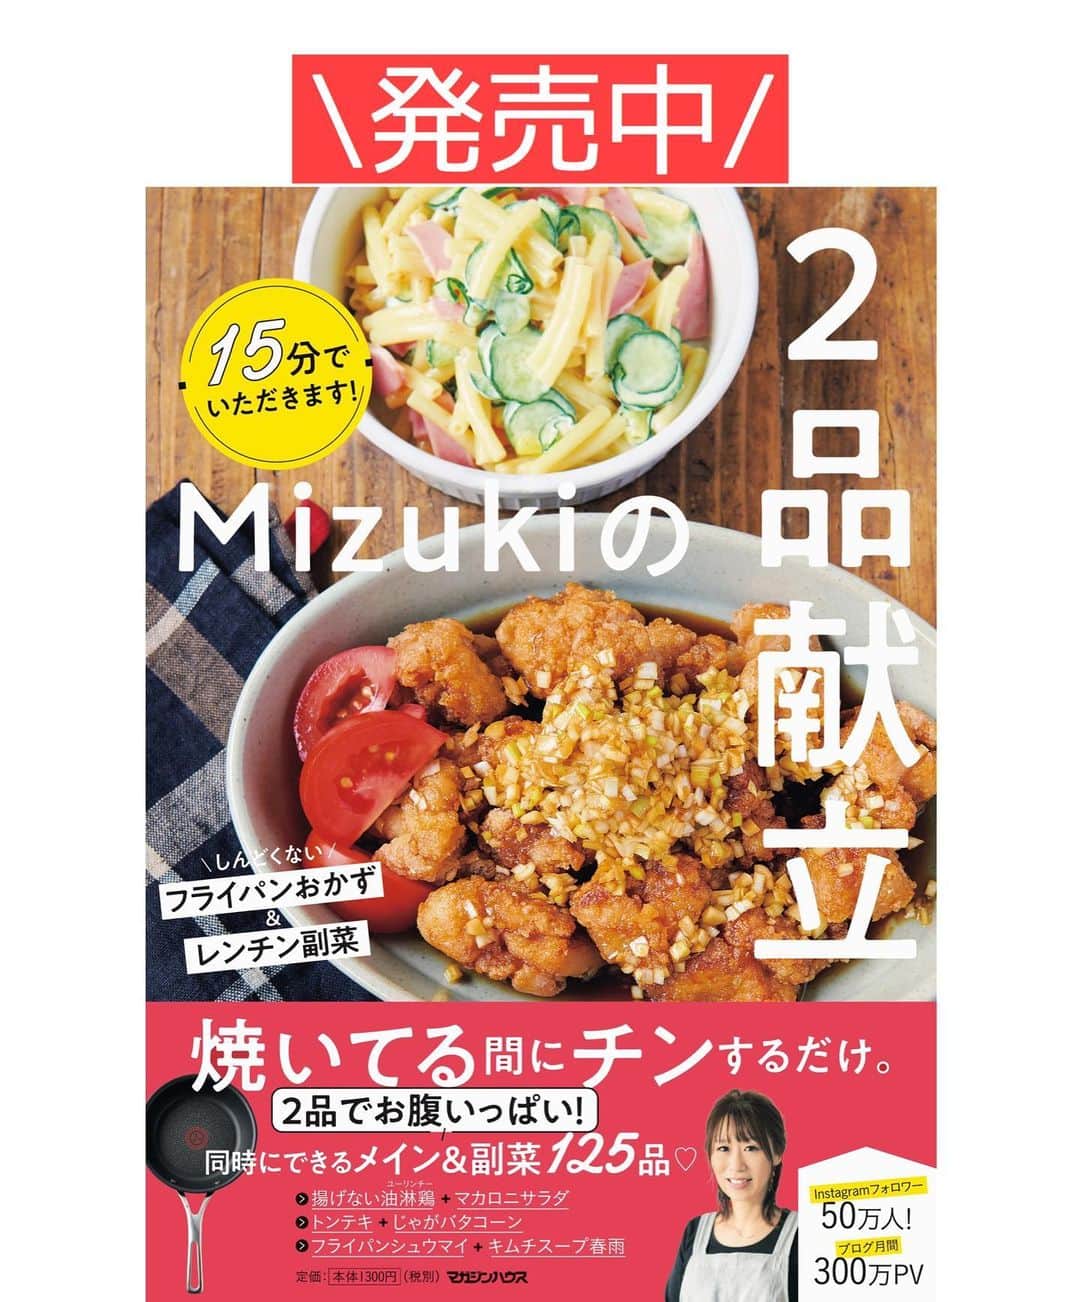 Mizuki【料理ブロガー・簡単レシピ】さんのインスタグラム写真 - (Mizuki【料理ブロガー・簡単レシピ】Instagram)「・﻿ 【#レシピ 】ーーーーーーーー﻿ ♡レンジdeマッシュポテト♡﻿ ーーーーーーーーーーーーーー﻿ ﻿ ﻿ ﻿ おはようございます(*^^*)﻿ ﻿ 今日ご紹介させていただくのは﻿ \レンジでできるマッシュポテト/﻿ ﻿ 限りなくシンプルで﻿ お肉料理の付け合わせにぴったり！﻿ チキン、ポーク、ビーフ﻿ なんにでも合いますよ〜(*´艸`)﻿ ﻿ レンチンマッシュポテトは﻿ メインを作っている合間にできるから﻿ 普段ごはんからイベントまで大活躍！﻿ とっても簡単なので﻿ お気軽にお試し下さいね(*^^*)﻿ ﻿ ﻿ ﻿ ＿＿＿＿＿＿＿＿＿＿＿＿＿＿＿＿＿＿＿＿﻿ 【作りやすい量】﻿ じゃがいも…2個(300g)﻿ バター…30g﻿ 牛乳…60ml〜﻿ 塩…少々﻿ 粗びき黒こしょう…適量﻿  ﻿ 1.じゃがいもは皮を剥いて3㎝大に切る。耐熱ボウルに入れてふんわりラップをかけ、600Wのレンジで7分加熱する。﻿ 2.熱い内にバターを加えてしっかりつぶし、牛乳を加えてよく混ぜ、塩で味を調える。仕上げに粗びき黒こしょうを振る。﻿ ￣￣￣￣￣￣￣￣￣￣￣￣￣￣￣￣￣￣￣￣﻿ ﻿ ﻿ ﻿ 《ポイント》﻿ ♦︎じゃがいもはしっかりつぶす程なめらかな口当たりになります♩﻿ ♦︎牛乳の量により柔らかさを調整できます♩はじめは少なめから加えて様子をみて下さい♩﻿ ♦︎ガーリックパウダーやナツメグを加えても美味しいです♩﻿ ﻿ ﻿ ﻿ ﻿ ﻿ ﻿ ﻿ ﻿ 📕新刊予約開始しました📕﻿ 【ラクしておいしい！#1品晩ごはん 】﻿ ￣￣￣￣￣￣￣￣￣￣￣￣￣￣￣￣￣﻿ 私たちだってヘトヘトな日がある•••﻿ 毎日何品も作っていられない•••﻿ もうごはんに悩みたくない😢﻿ そう思うことってありませんか？﻿ そんな時、1品ごはんはいかがでしょう？﻿ というご提案です✨﻿ ﻿ ﻿ 【1品ごはん】は﻿ 副菜いらずで全てがシンプル！﻿ ￣￣￣￣￣￣￣￣￣￣￣￣￣￣￣￣￣￣﻿ 一品つくるだけでいいから﻿ 献立を考えなくてよし！﻿ ￣￣￣￣￣￣￣￣￣￣￣￣￣￣￣￣￣￣﻿ 悩まない、疲れない、﻿ 気力や時間がなくてもなんとかなる！﻿ ￣￣￣￣￣￣￣￣￣￣￣￣￣￣￣￣￣￣﻿ そんな頼りになる﻿ 便利なお助けごはんです☺️💕﻿ (ハイライトに🔗貼っています✨)﻿ ￣￣￣￣￣￣￣￣￣￣￣￣￣￣￣￣￣﻿ ﻿ ﻿ ﻿ ﻿ ﻿ ⭐️発売中⭐️﻿ ＿＿＿＿＿＿＿＿＿＿＿＿＿＿＿＿＿＿﻿ しんどくない献立、考えました♩﻿ \15分でいただきます/﻿ 📕#Mizukiの2品献立 📕﻿ ﻿ 和食をもっとカジュアルに♩﻿ \毎日のごはんがラクになる/﻿ 📘#Mizukiの今どき和食 📘﻿ ﻿ ホケミレシピの決定版♩﻿ \はじめてでも失敗しない/﻿ 📙ホットケーキミックスのお菓子 📙﻿ ﻿ NHKまる得マガジンテキスト☆﻿ ホットケーキミックスで﻿ 📗絶品おやつ&意外なランチ📗﻿ ￣￣￣￣￣￣￣￣￣￣￣￣￣￣￣￣￣￣﻿ ﻿ ﻿ ﻿ ＿＿＿＿＿＿＿＿＿＿＿＿＿＿＿＿＿＿﻿ レシピを作って下さった際や﻿ レシピ本についてのご投稿には﻿ タグ付け( @mizuki_31cafe )して﻿ お知らせいただけると嬉しいです😊💕﻿ ￣￣￣￣￣￣￣￣￣￣￣￣￣￣￣￣￣￣﻿ ﻿ ﻿ ﻿ ﻿ #マッシュポテト#じゃがいも#レンジ#副菜#クリスマス#Mizuki#簡単レシピ#時短レシピ#節約レシピ#料理#フーディーテーブル#マカロニメイト#おうちごはん#デリスタグラマー#料理好きな人と繋がりたい#食べ物#おうちごはんlover#写真好きな人と繋がりたい#foodpic#cooking#recipe#lin_stagrammer#foodporn#yummy#f52grams#マッシュポテトm」12月16日 6時57分 - mizuki_31cafe